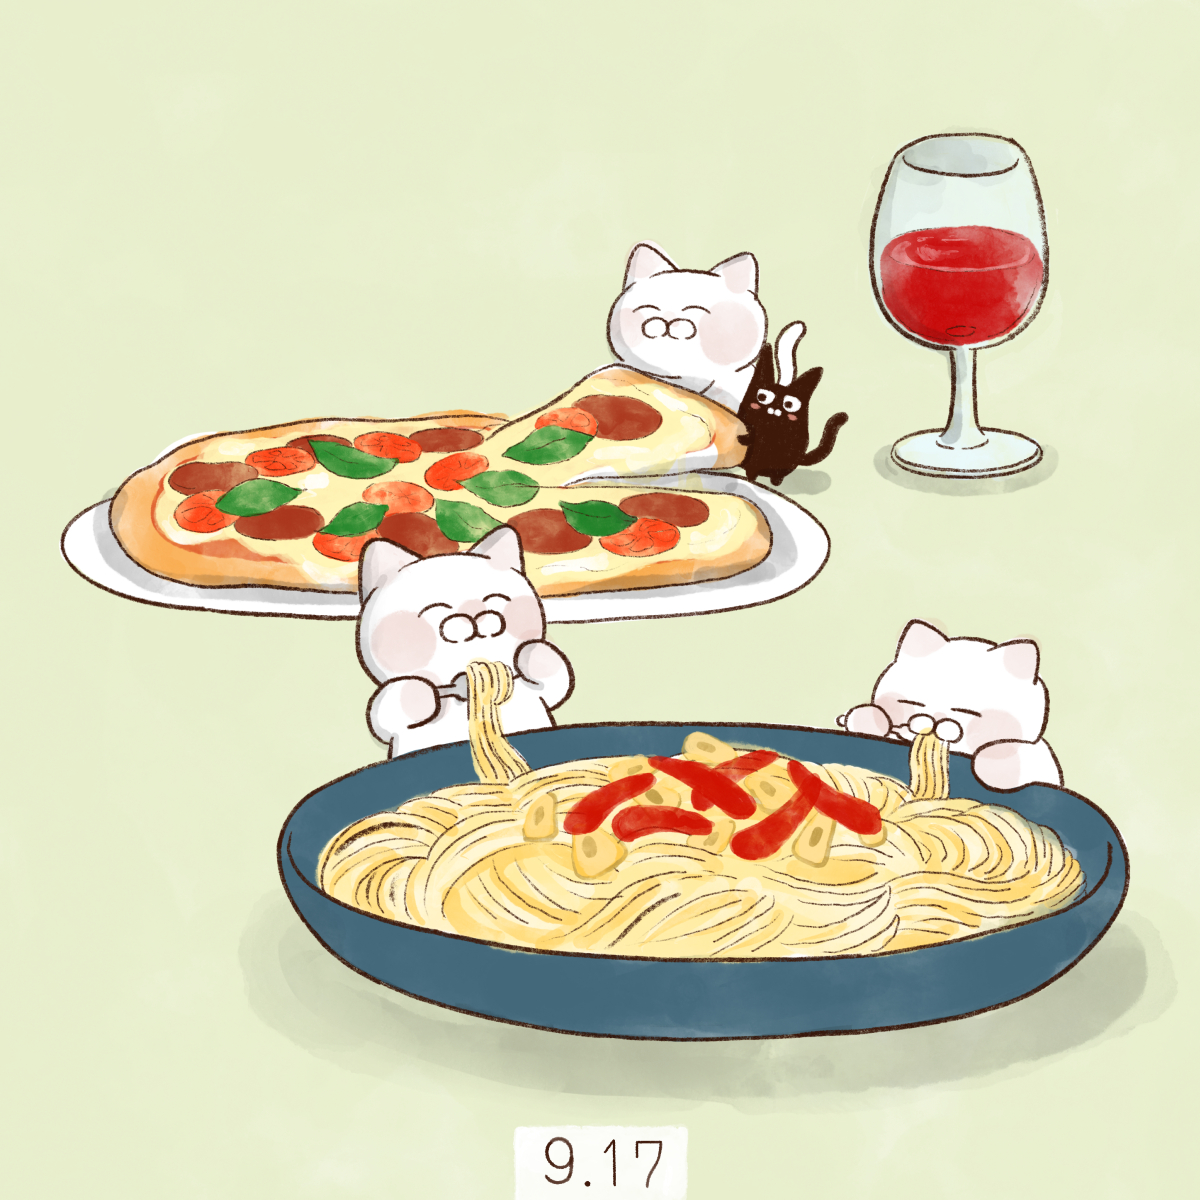 「9月17日【イタリア料理の日】イタリア語で「料理」を意味する「クチーナ(CUCI」|大和猫のイラスト